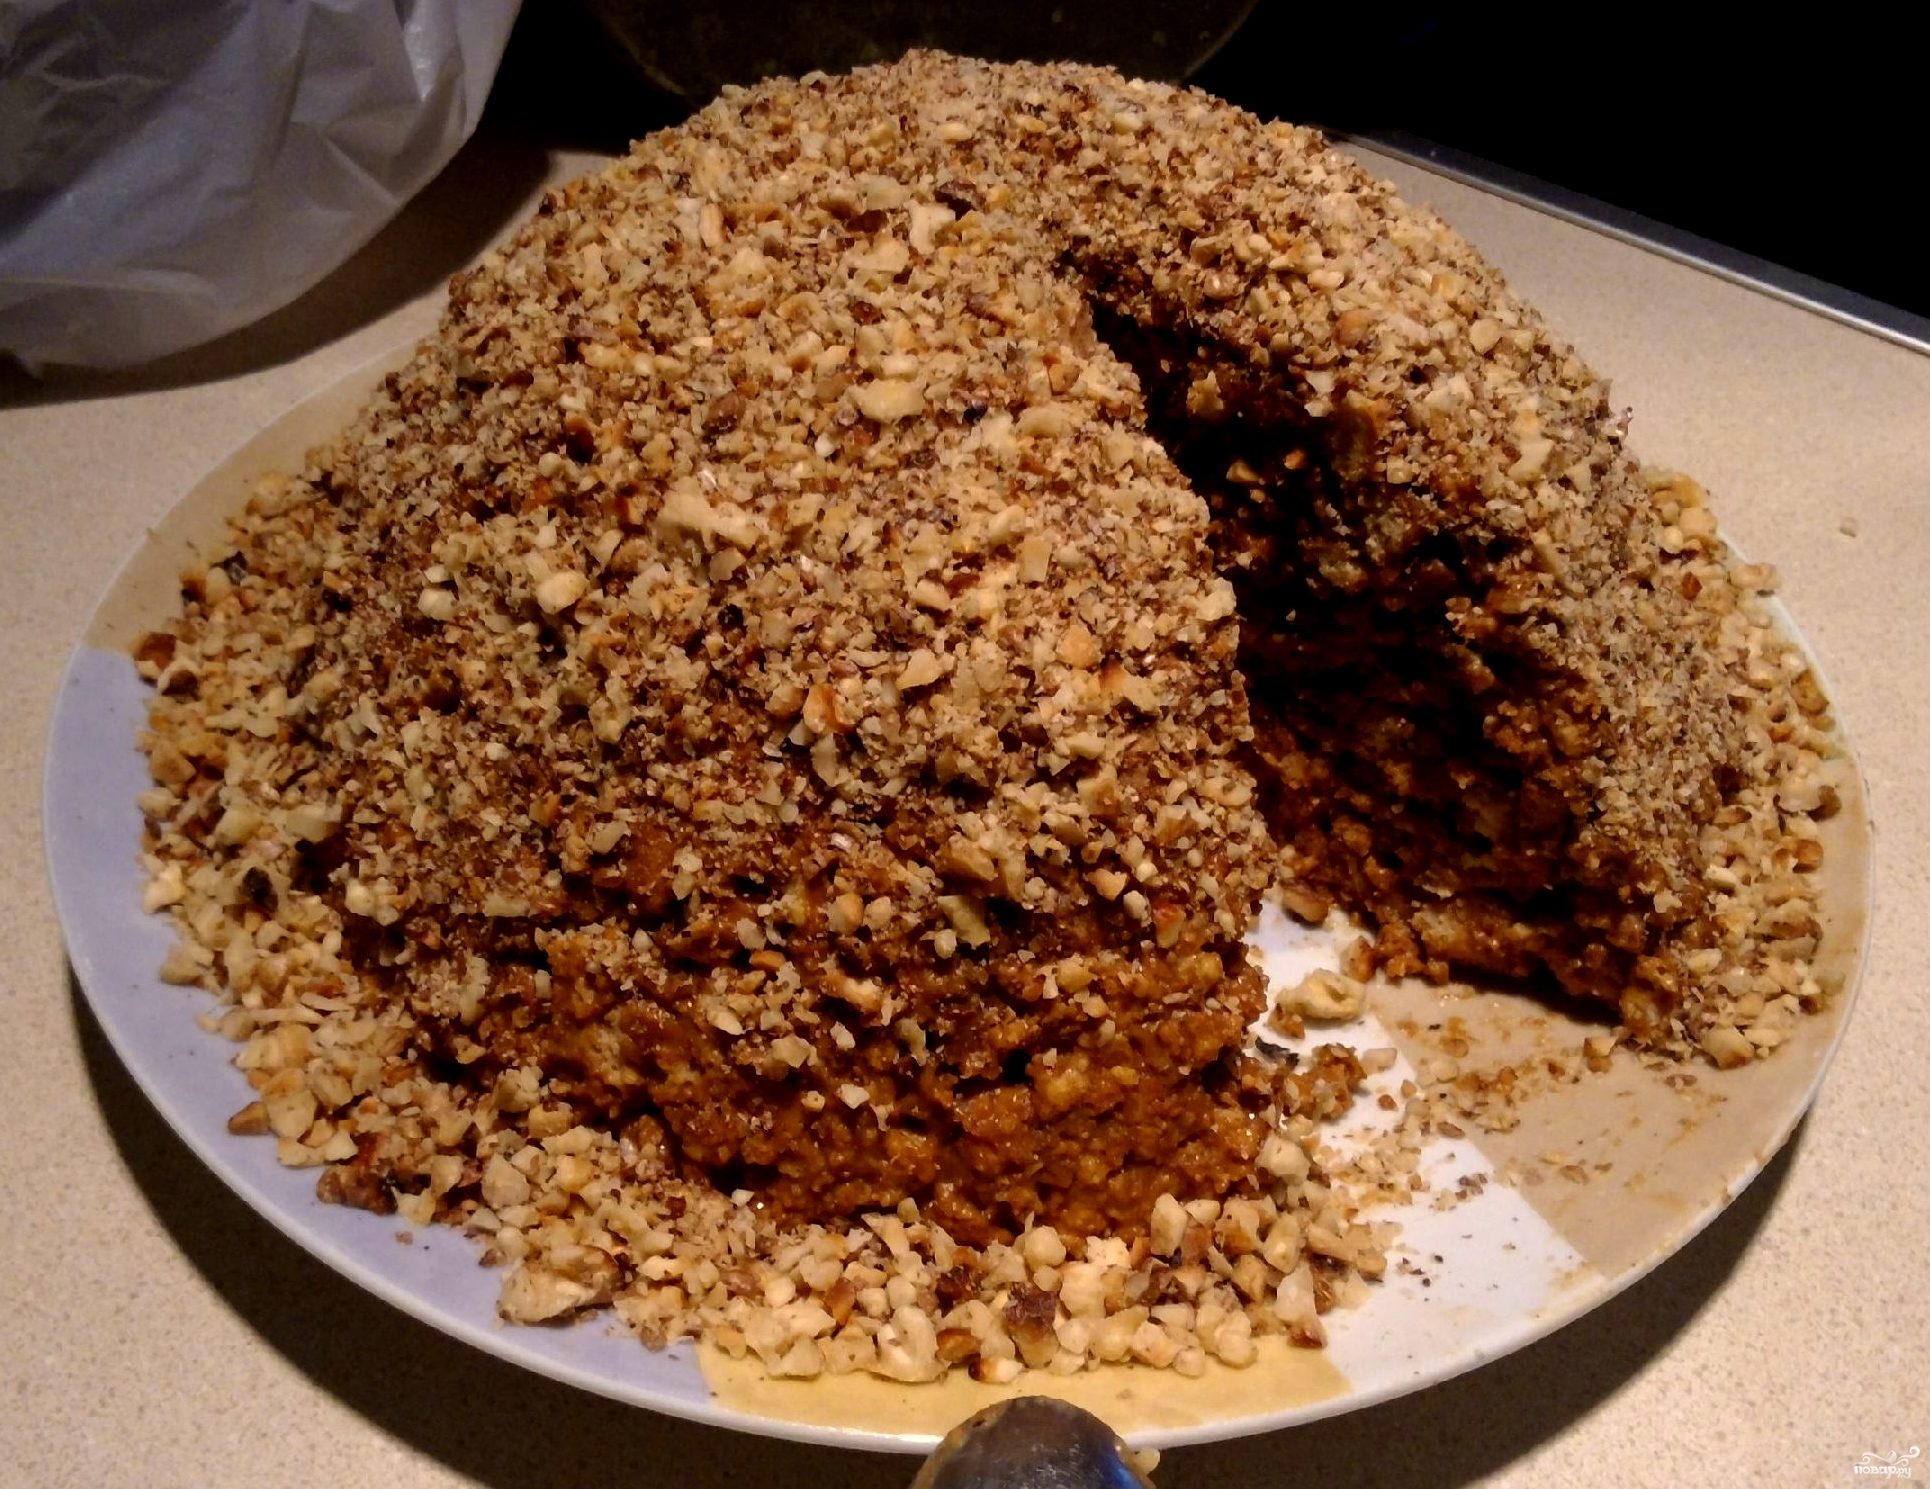 Торт муравейник классический рецепт в домашних условиях со сгущенкой вареной пошаговый рецепт с фото